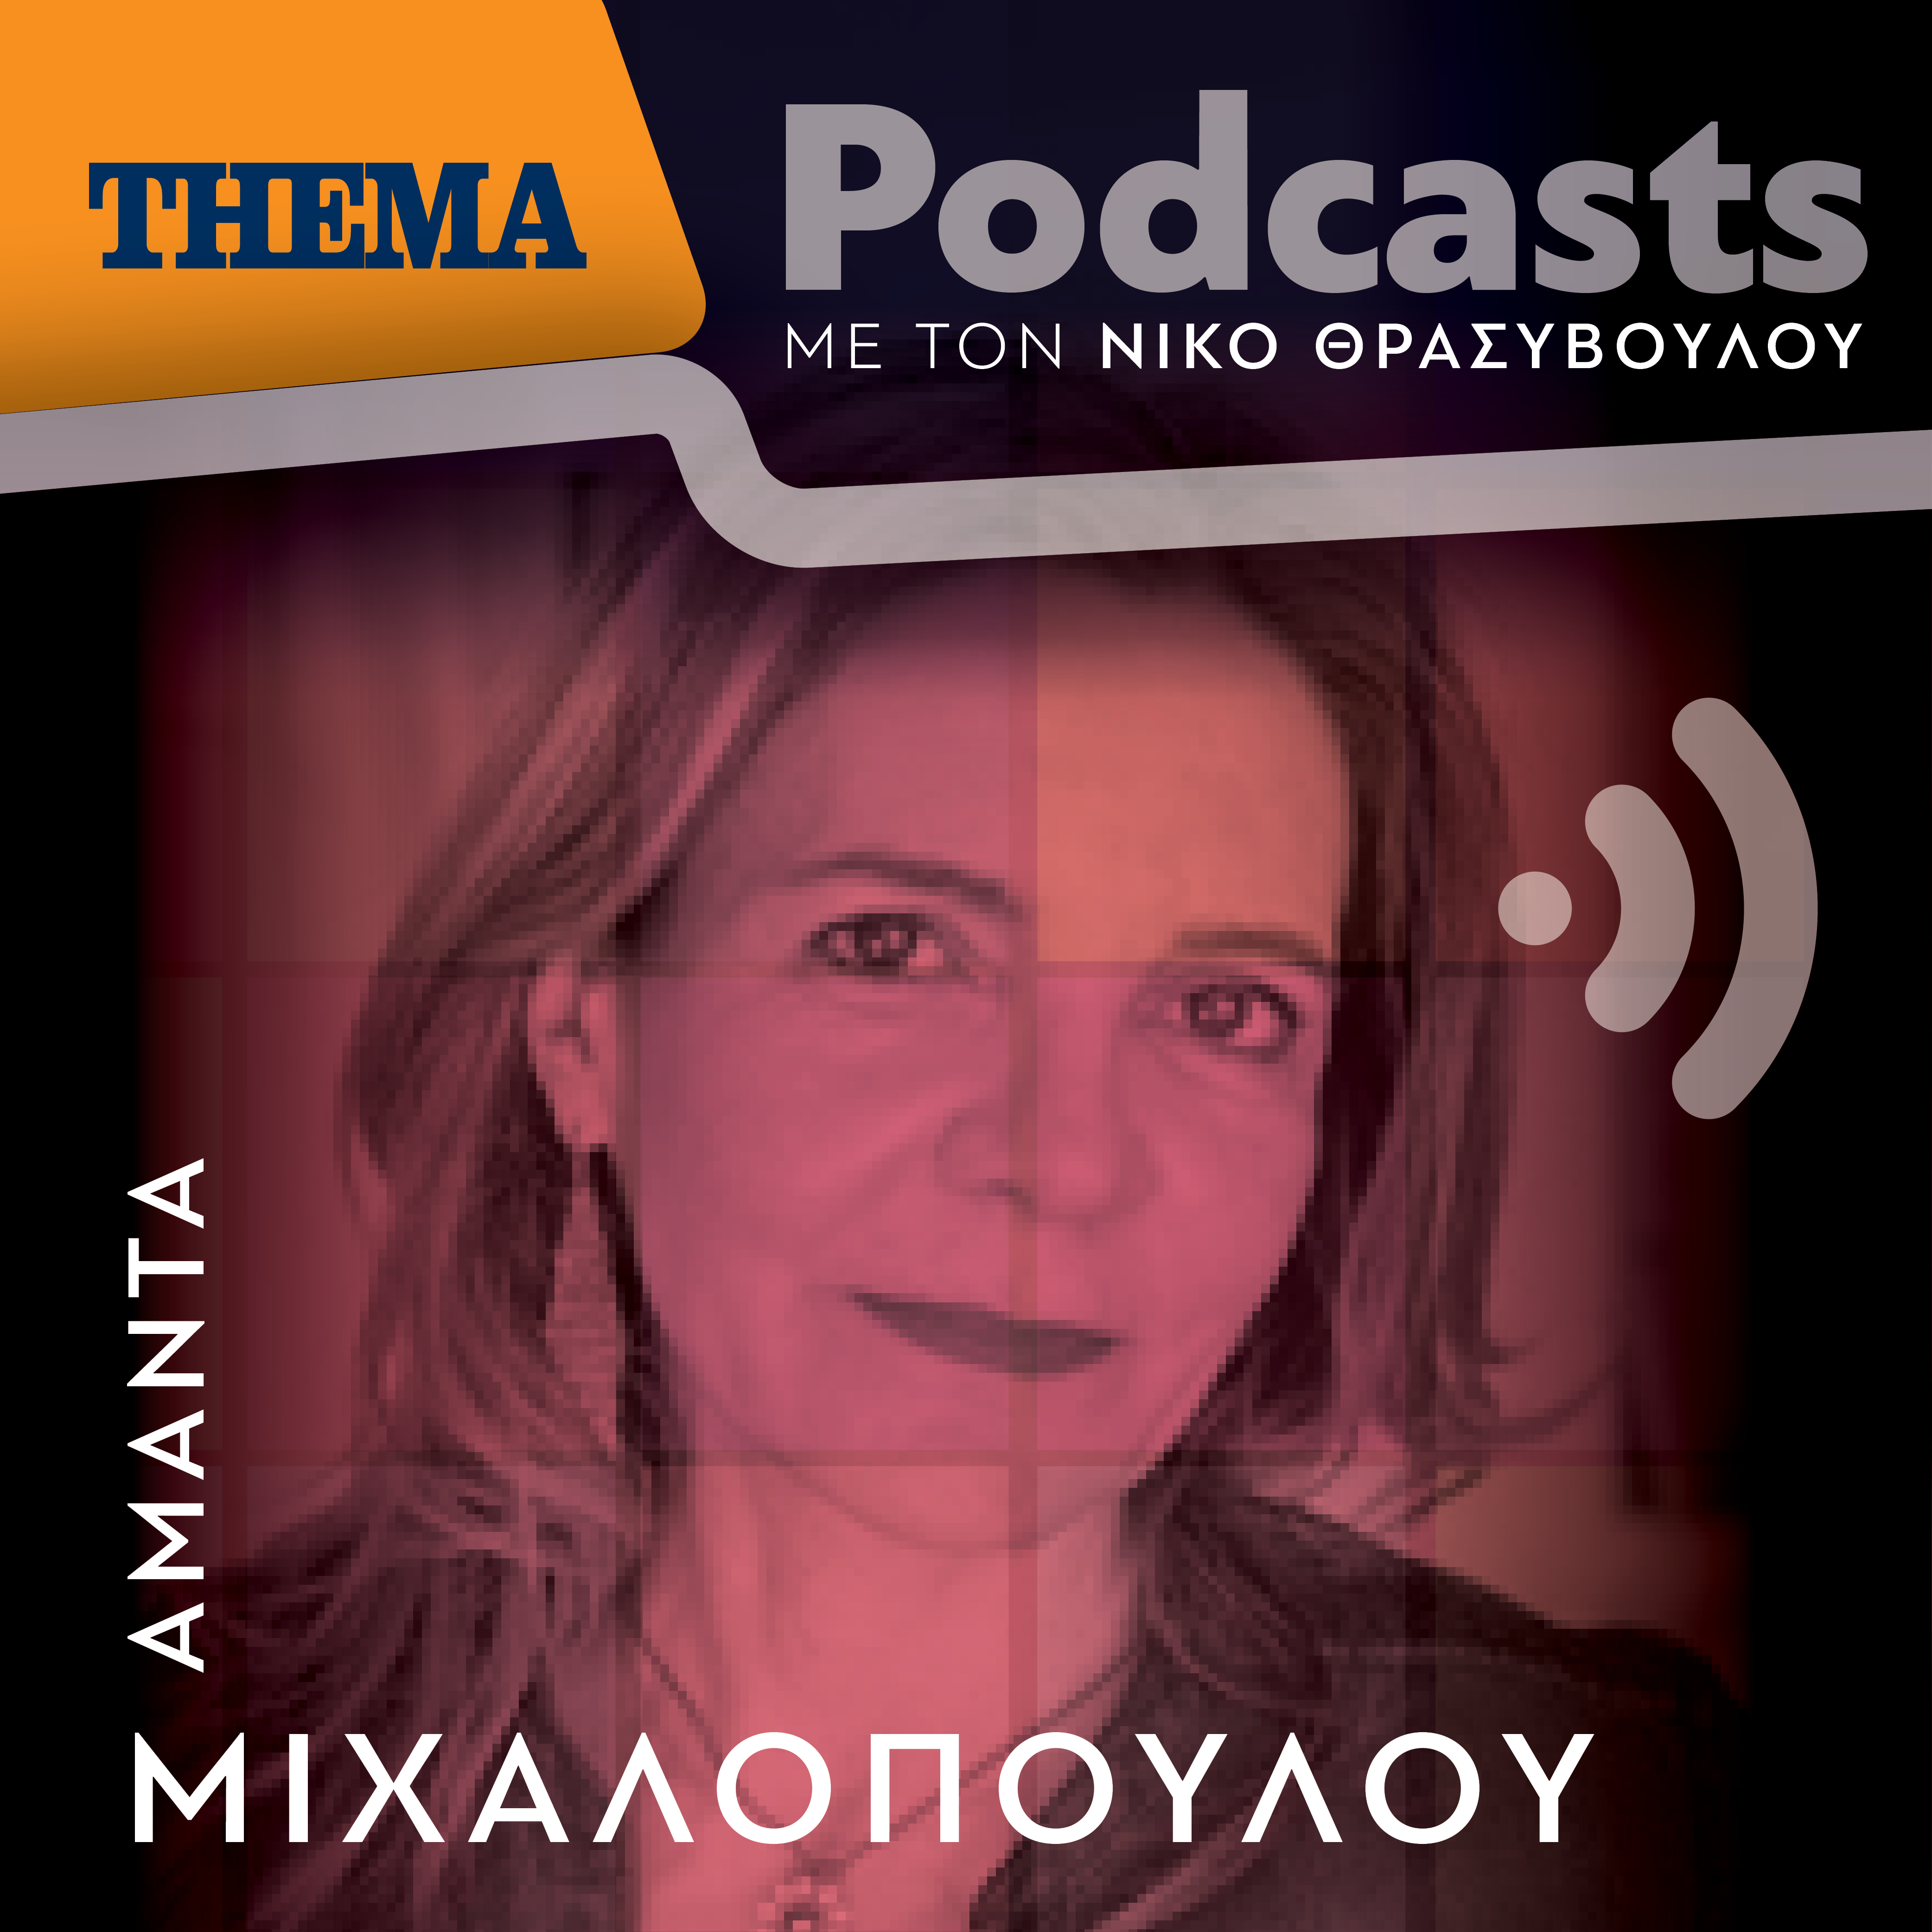 Αμάντα Μιχαλοπούλου: «Ζούμε σε μια μεταιχμιακή εποχή και βιώνουμε σπουδαία πράγματα»